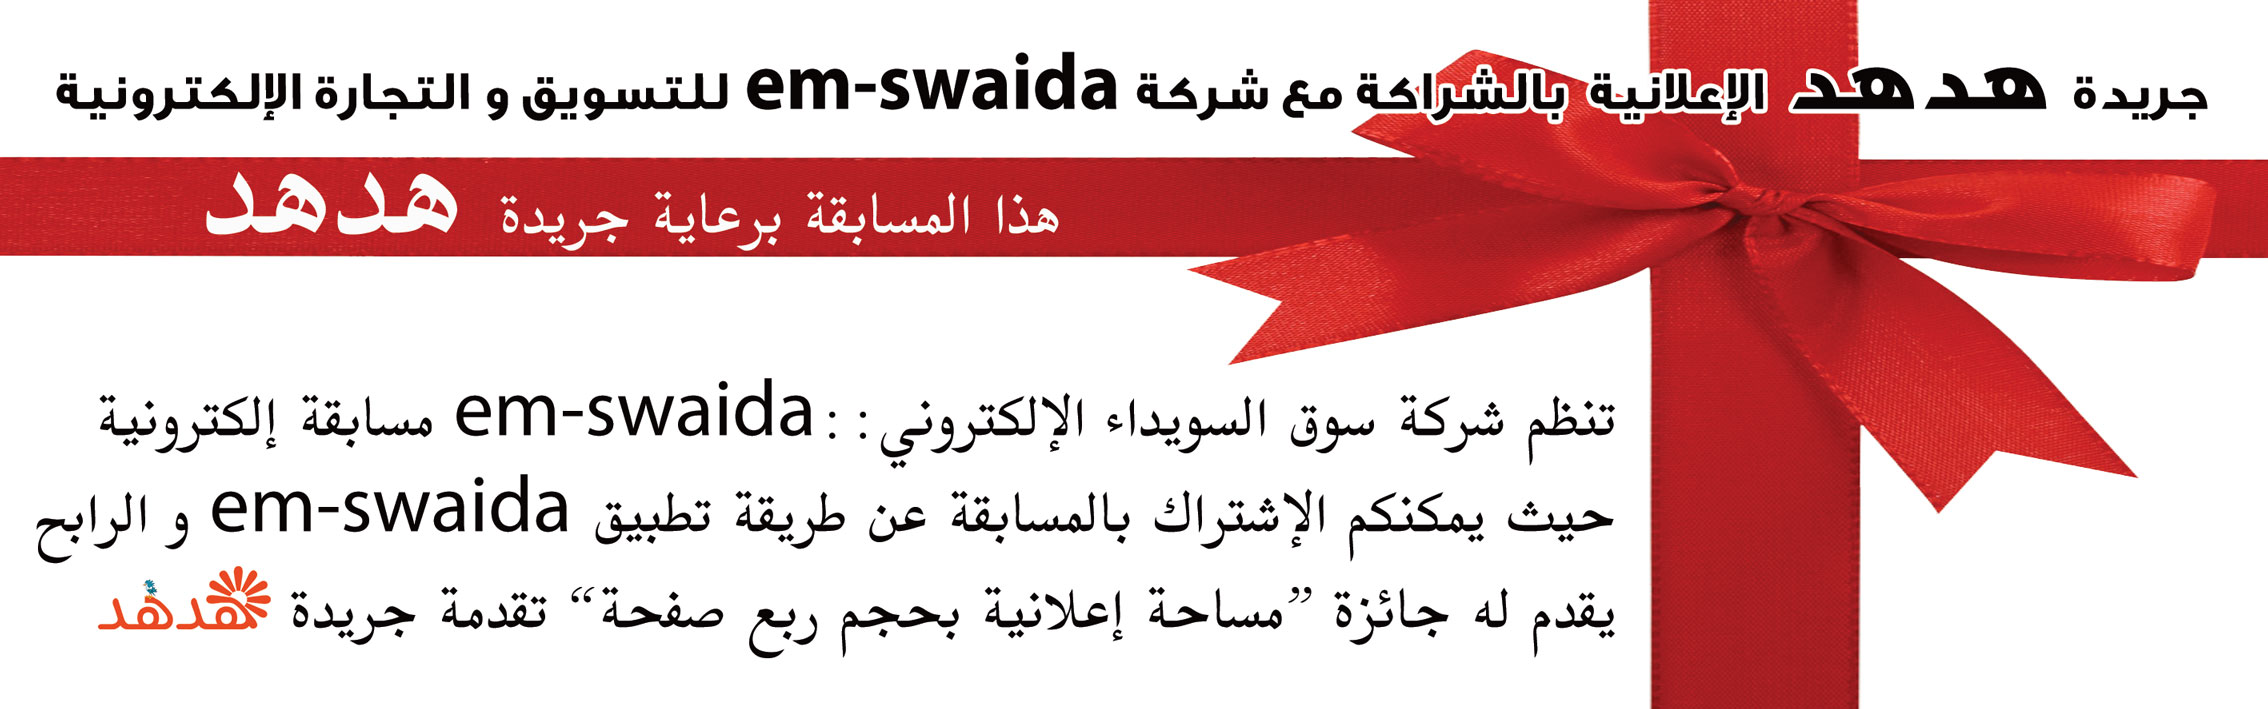 جريدة هدهد الإعلانية بالشراكة مع شركة em-swaida للتسويق والتجارة الإلكترونية -  - جريدة هدهد الإعلانية